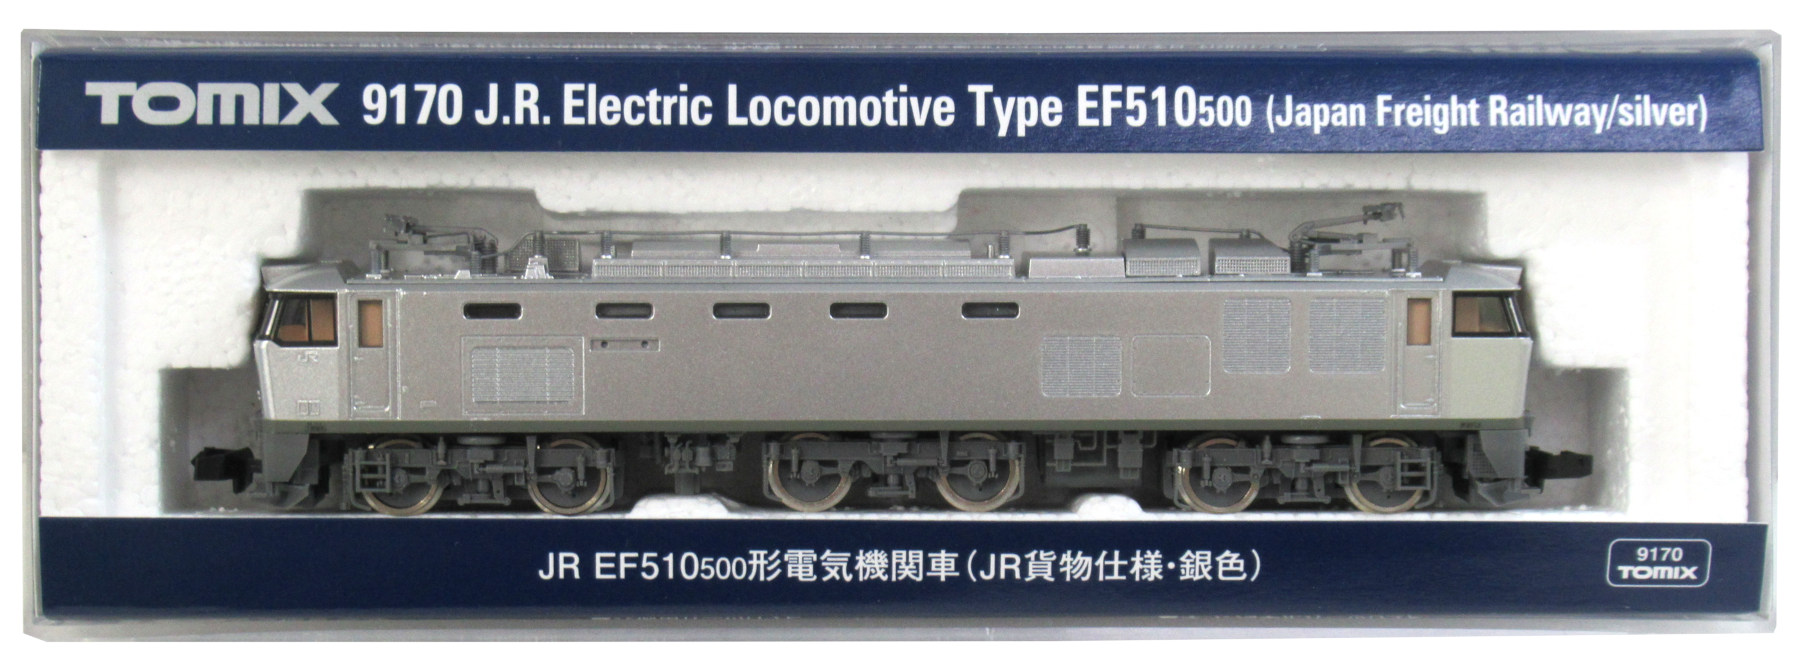 公式]鉄道模型(9170JR EF510-500形電気機関車 (JR貨物仕様銀色))商品 